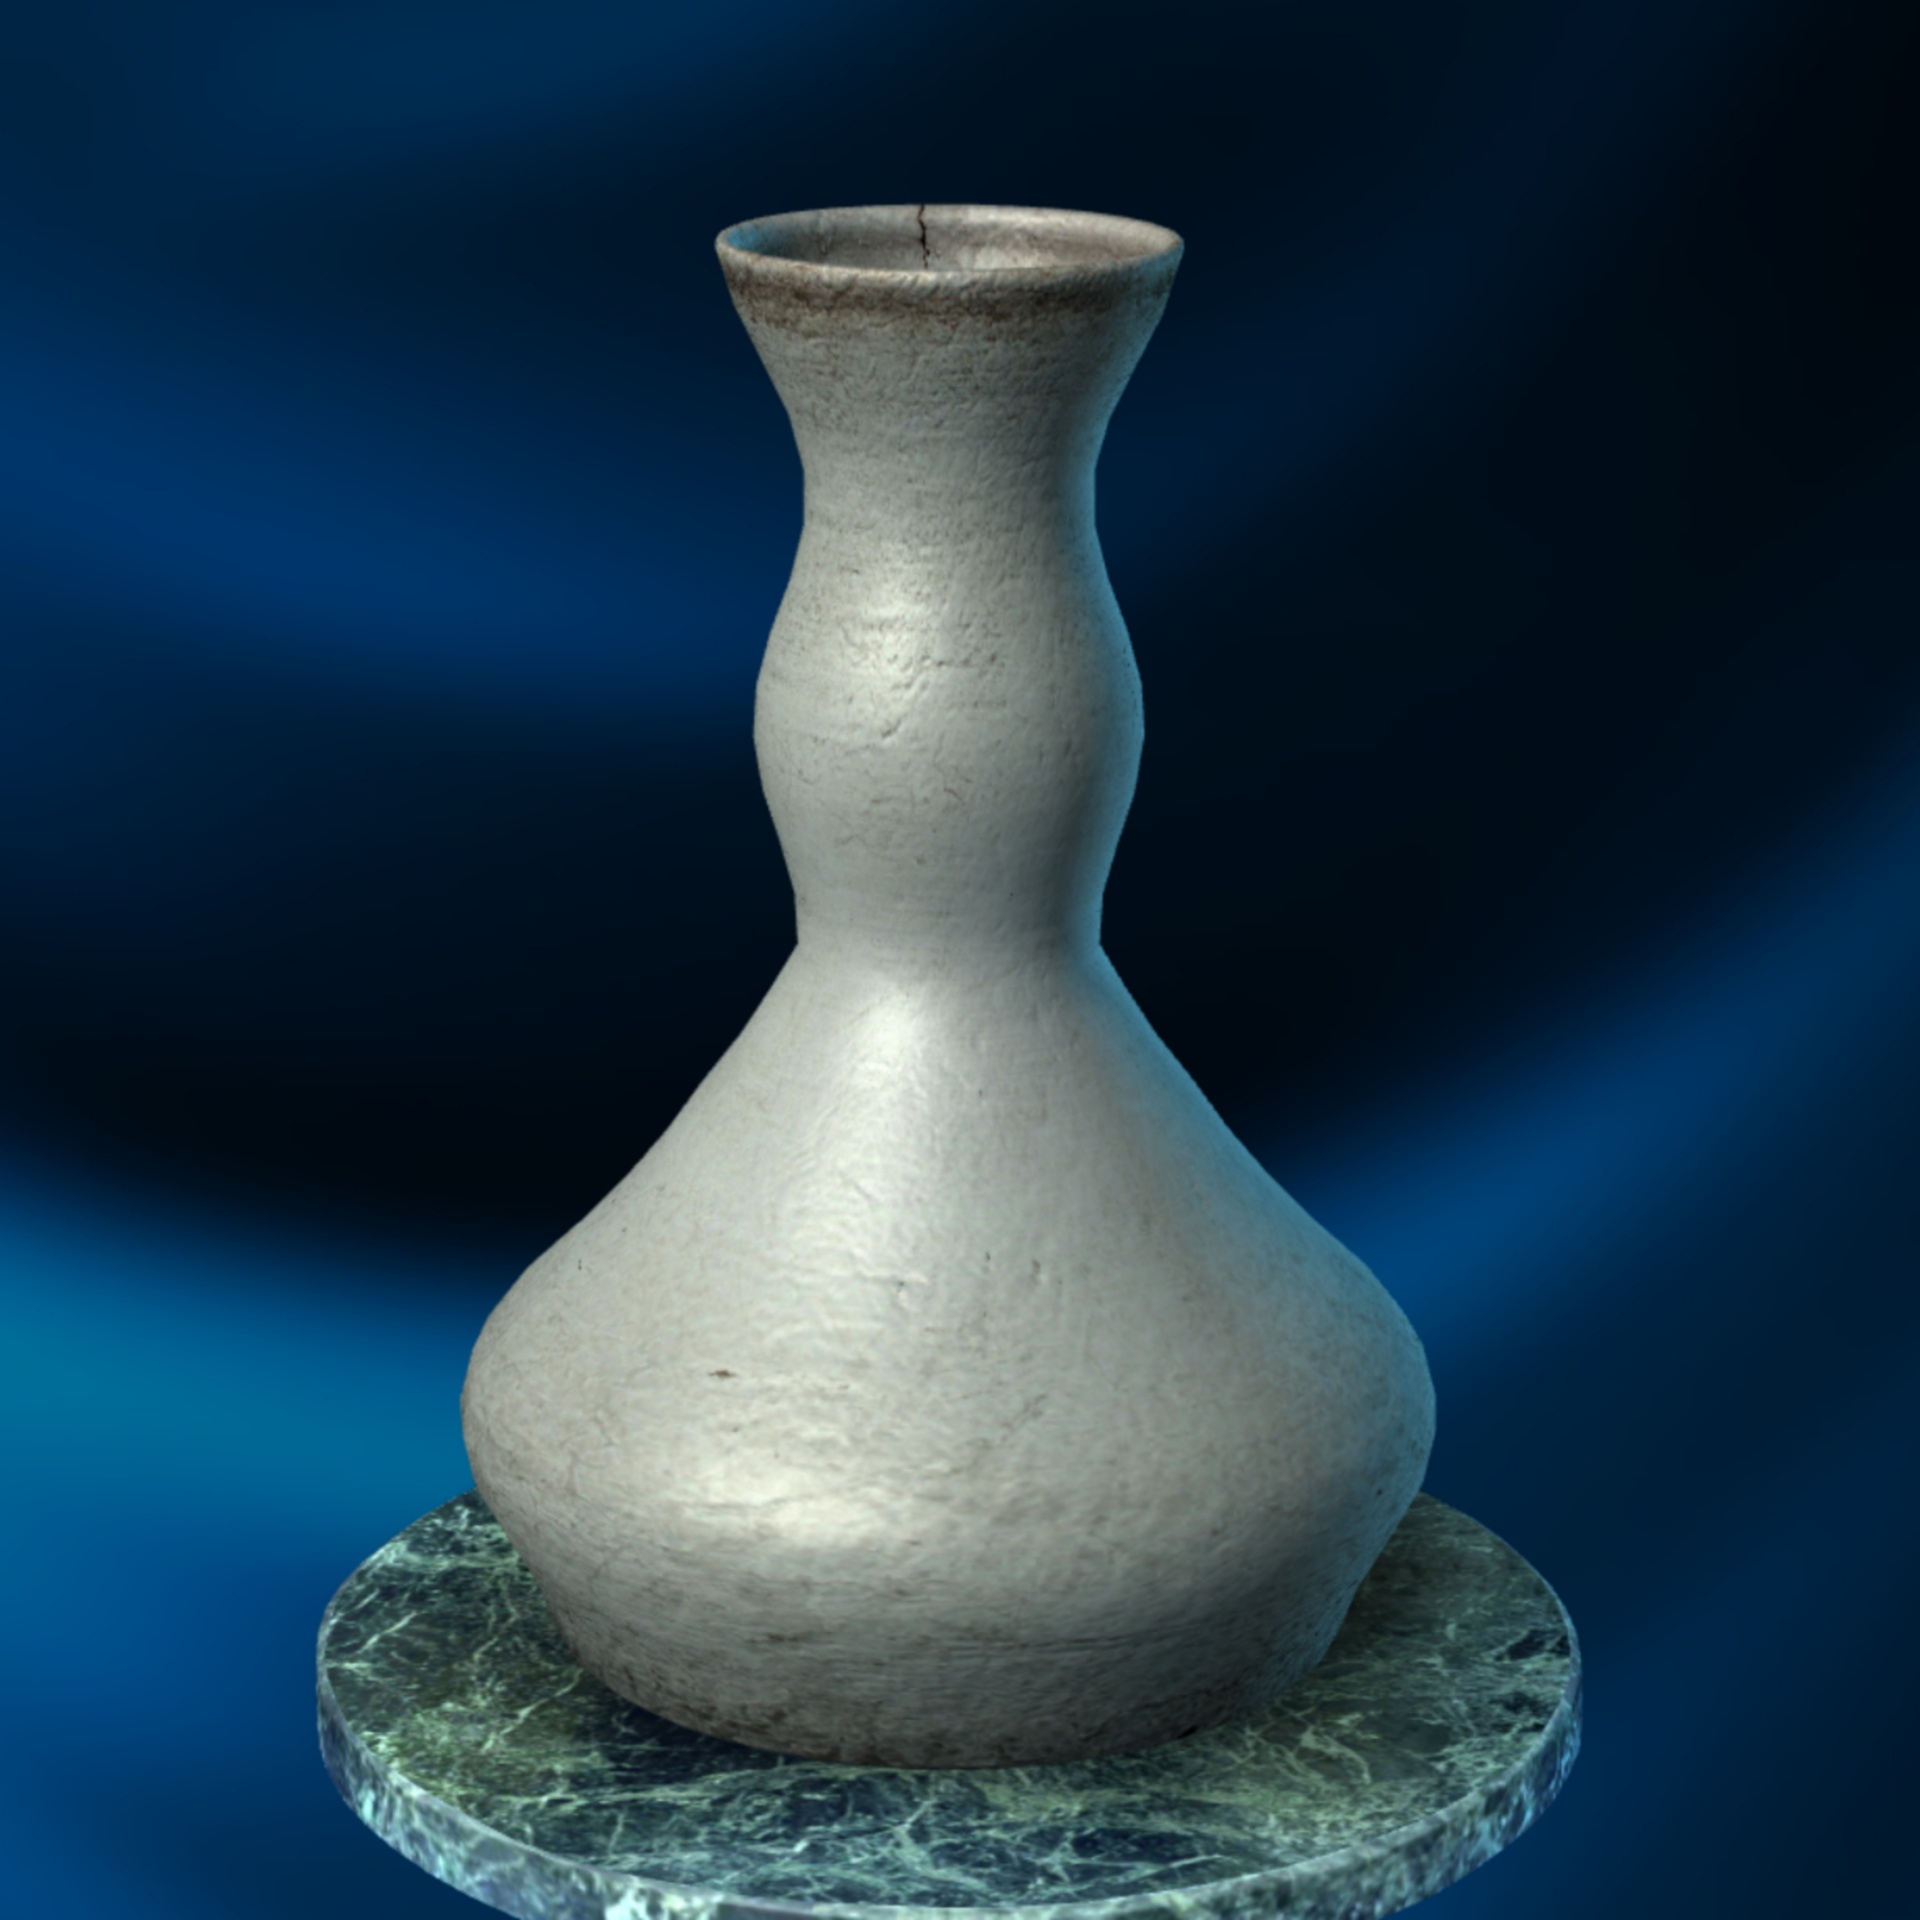 clay vase pottery free photo